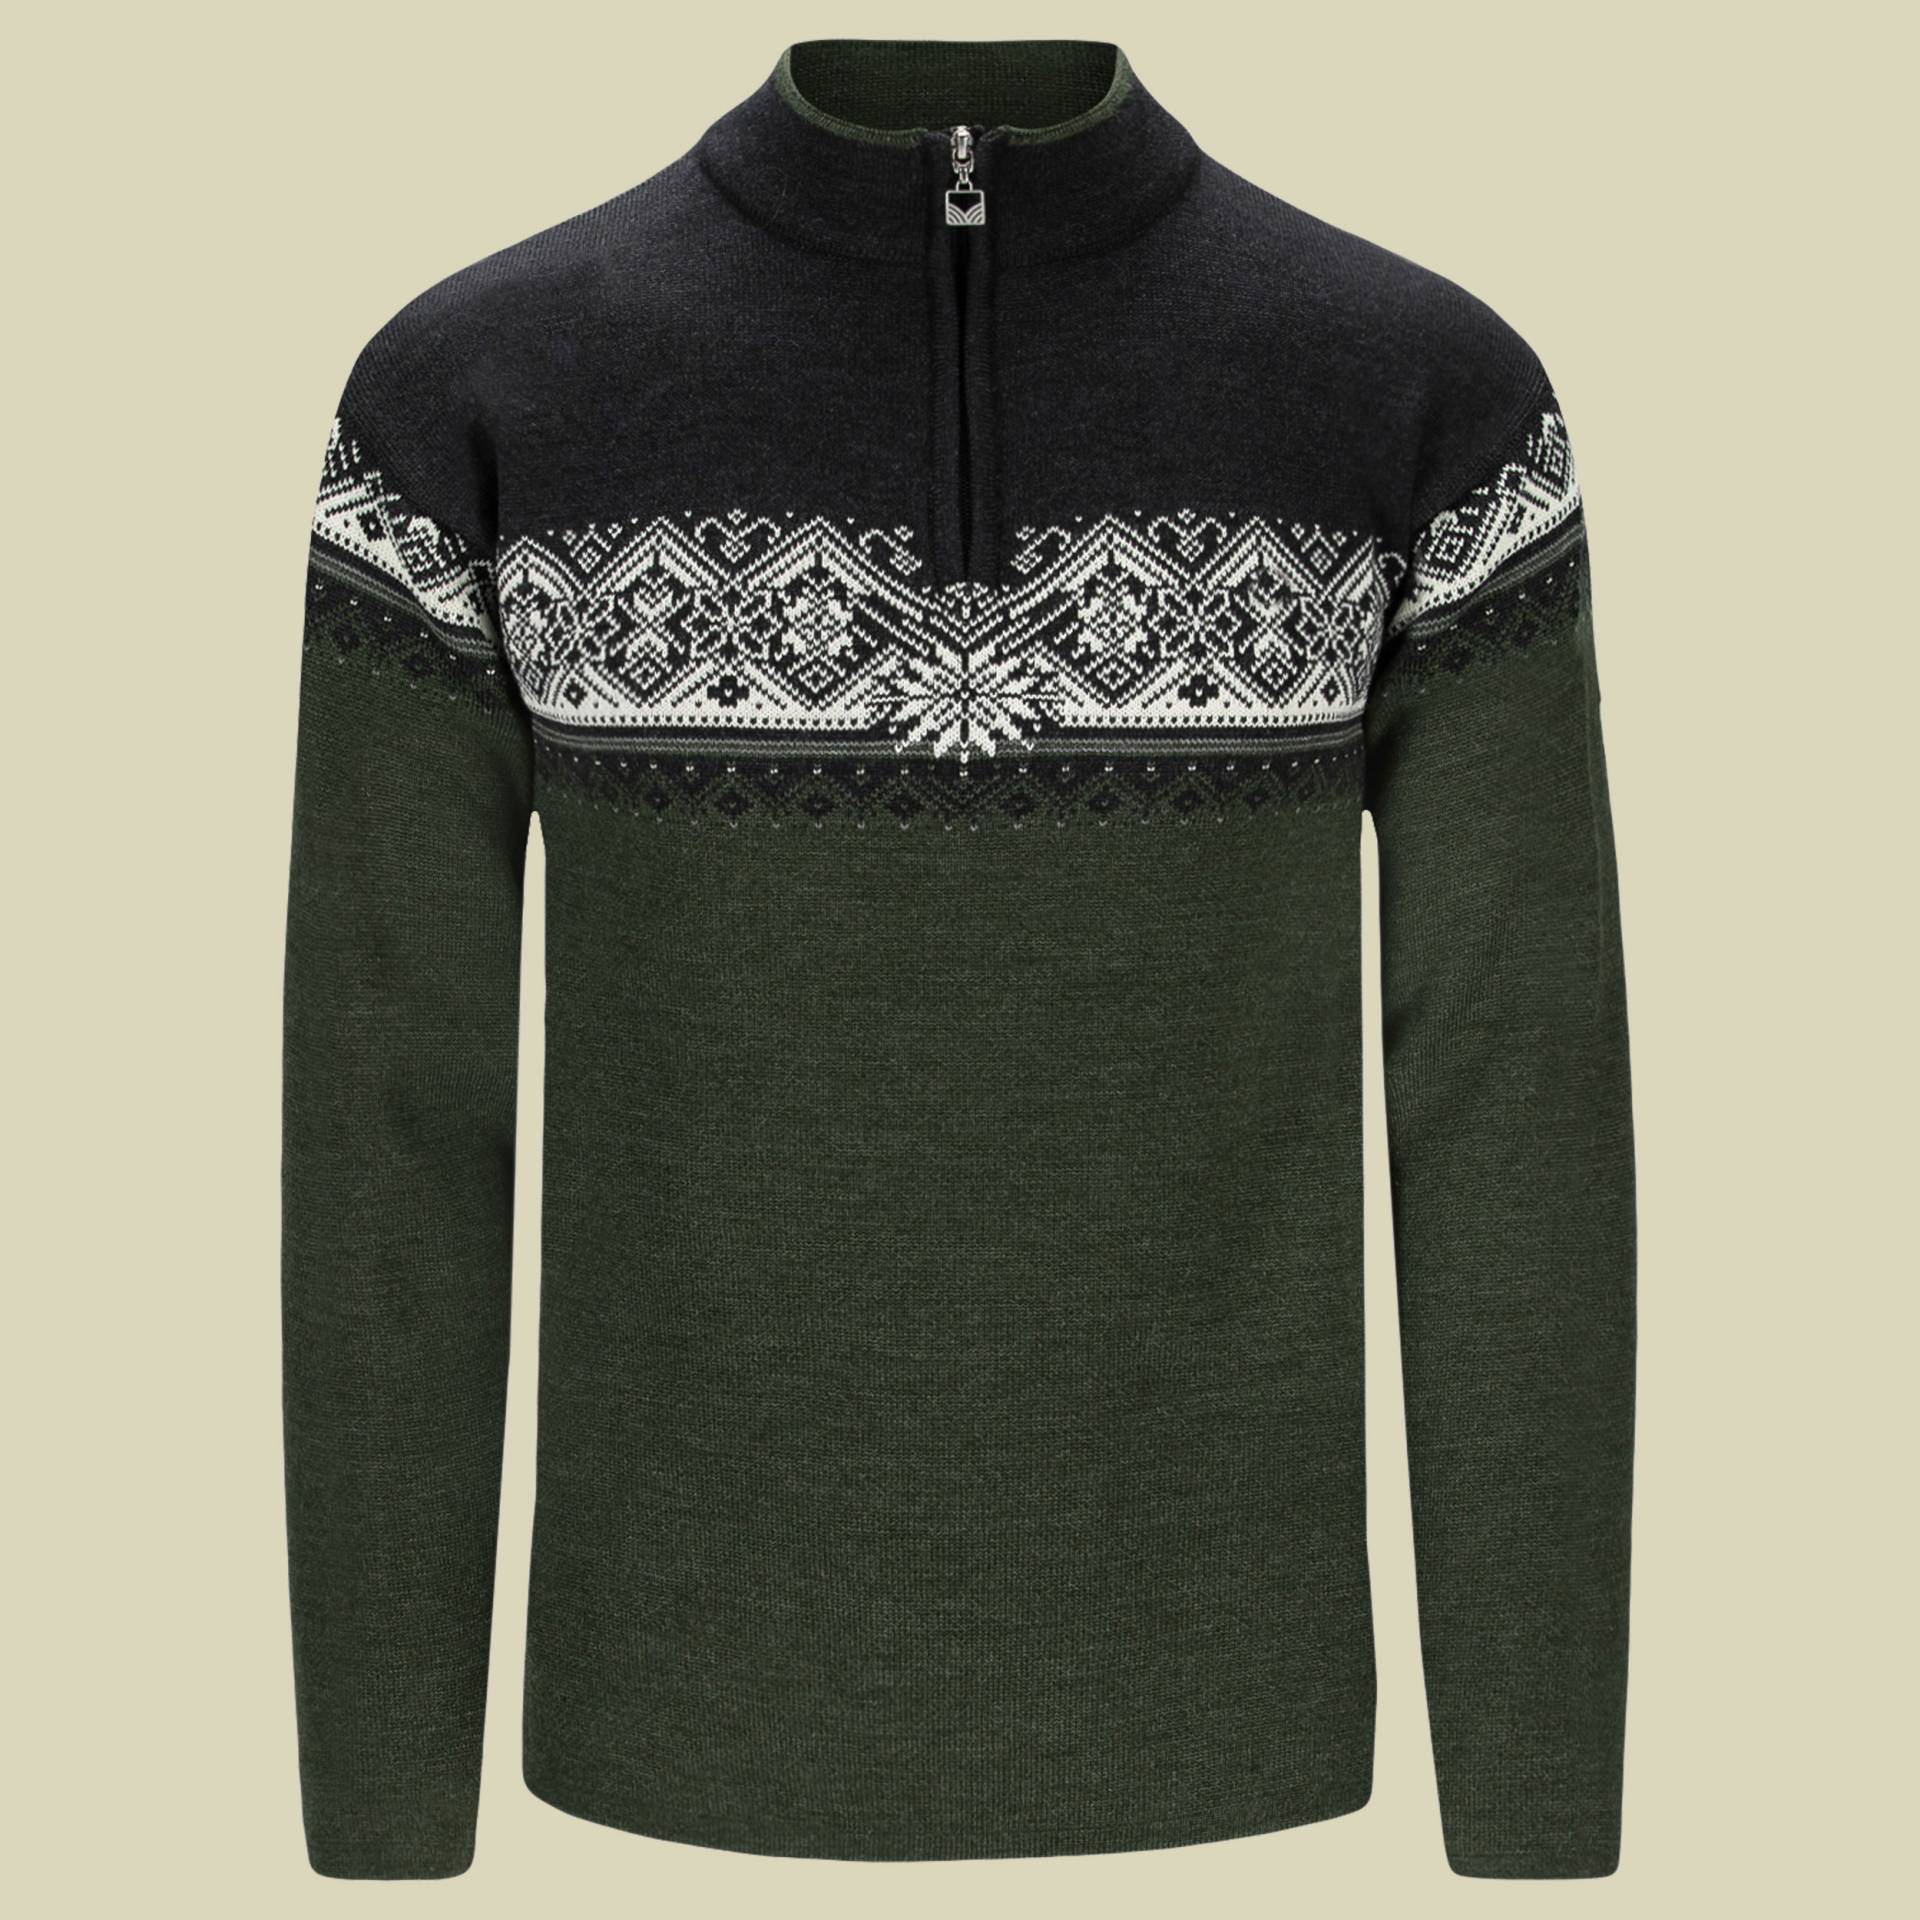 Moritz Sweater Men Größe XL Farbe dark green-smoke-dark charcoal von Dale of Norway